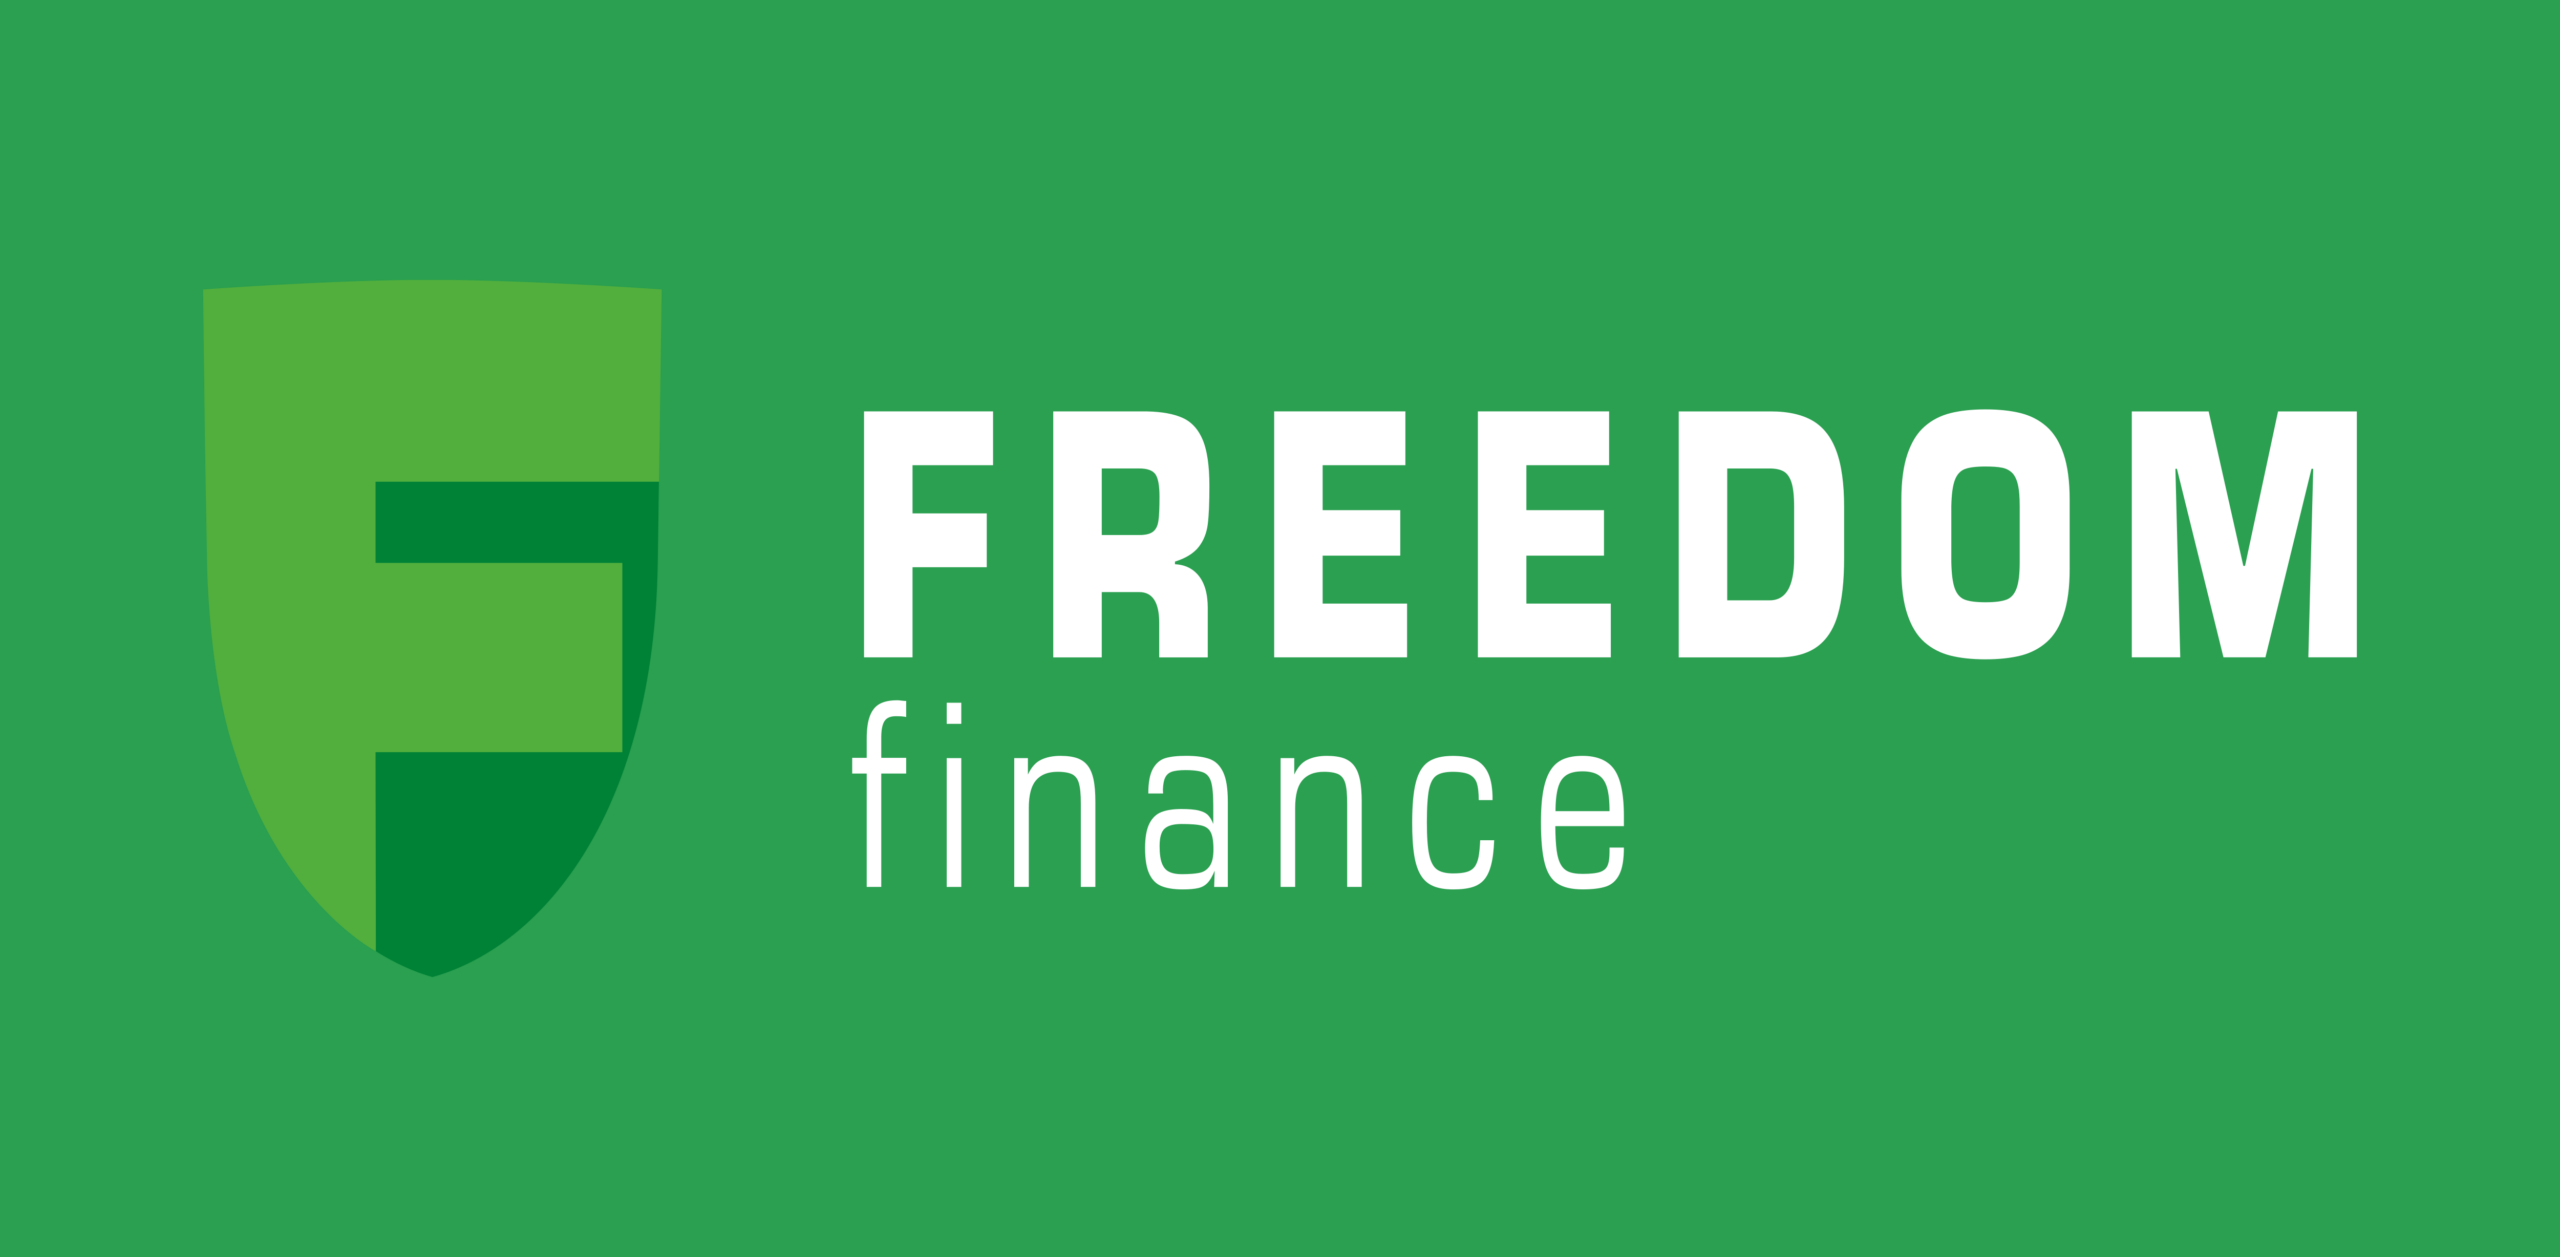 Olga Milko, affärsutvecklingschef för Freedom Finance Europe, pratade om ETFer med Analist.nl under Money 20/20 Europe. Hon säger att ETF-marknaden blomstrar i Europa.